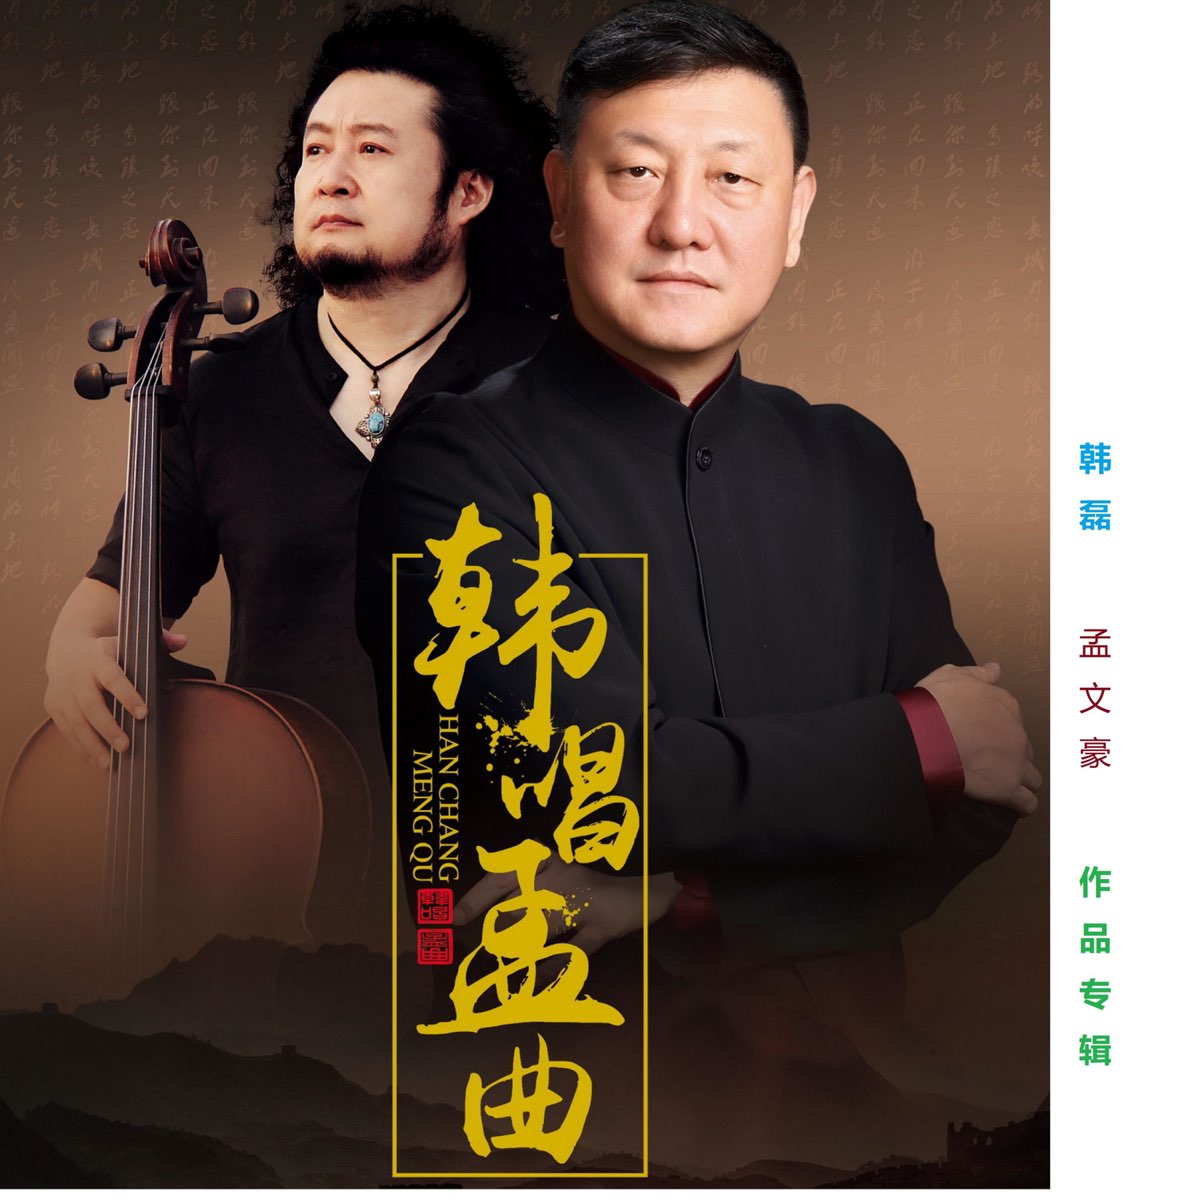 ‎《百年奋斗百年荣光 - Single》- 韩磊的专辑 - Apple Music